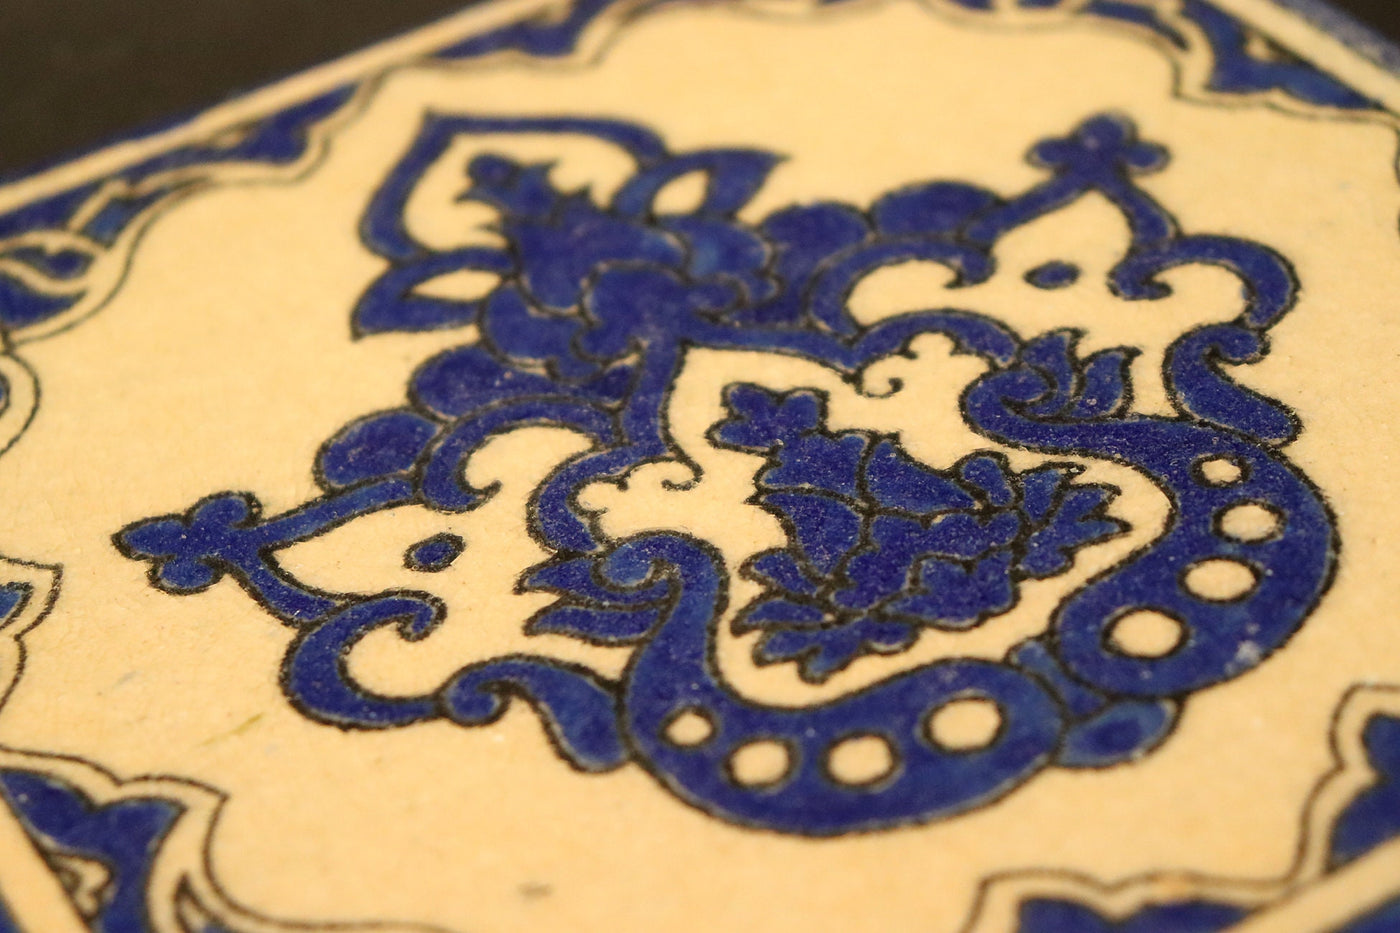 17x17 cm vintage handgefertigt islamische orient Glasierte Ton Fliesen Töpfer Fliesen Keramik Fliese kacheln Bodenfliesen Wandfliesen Nr:B Keramik Orientsbazar   